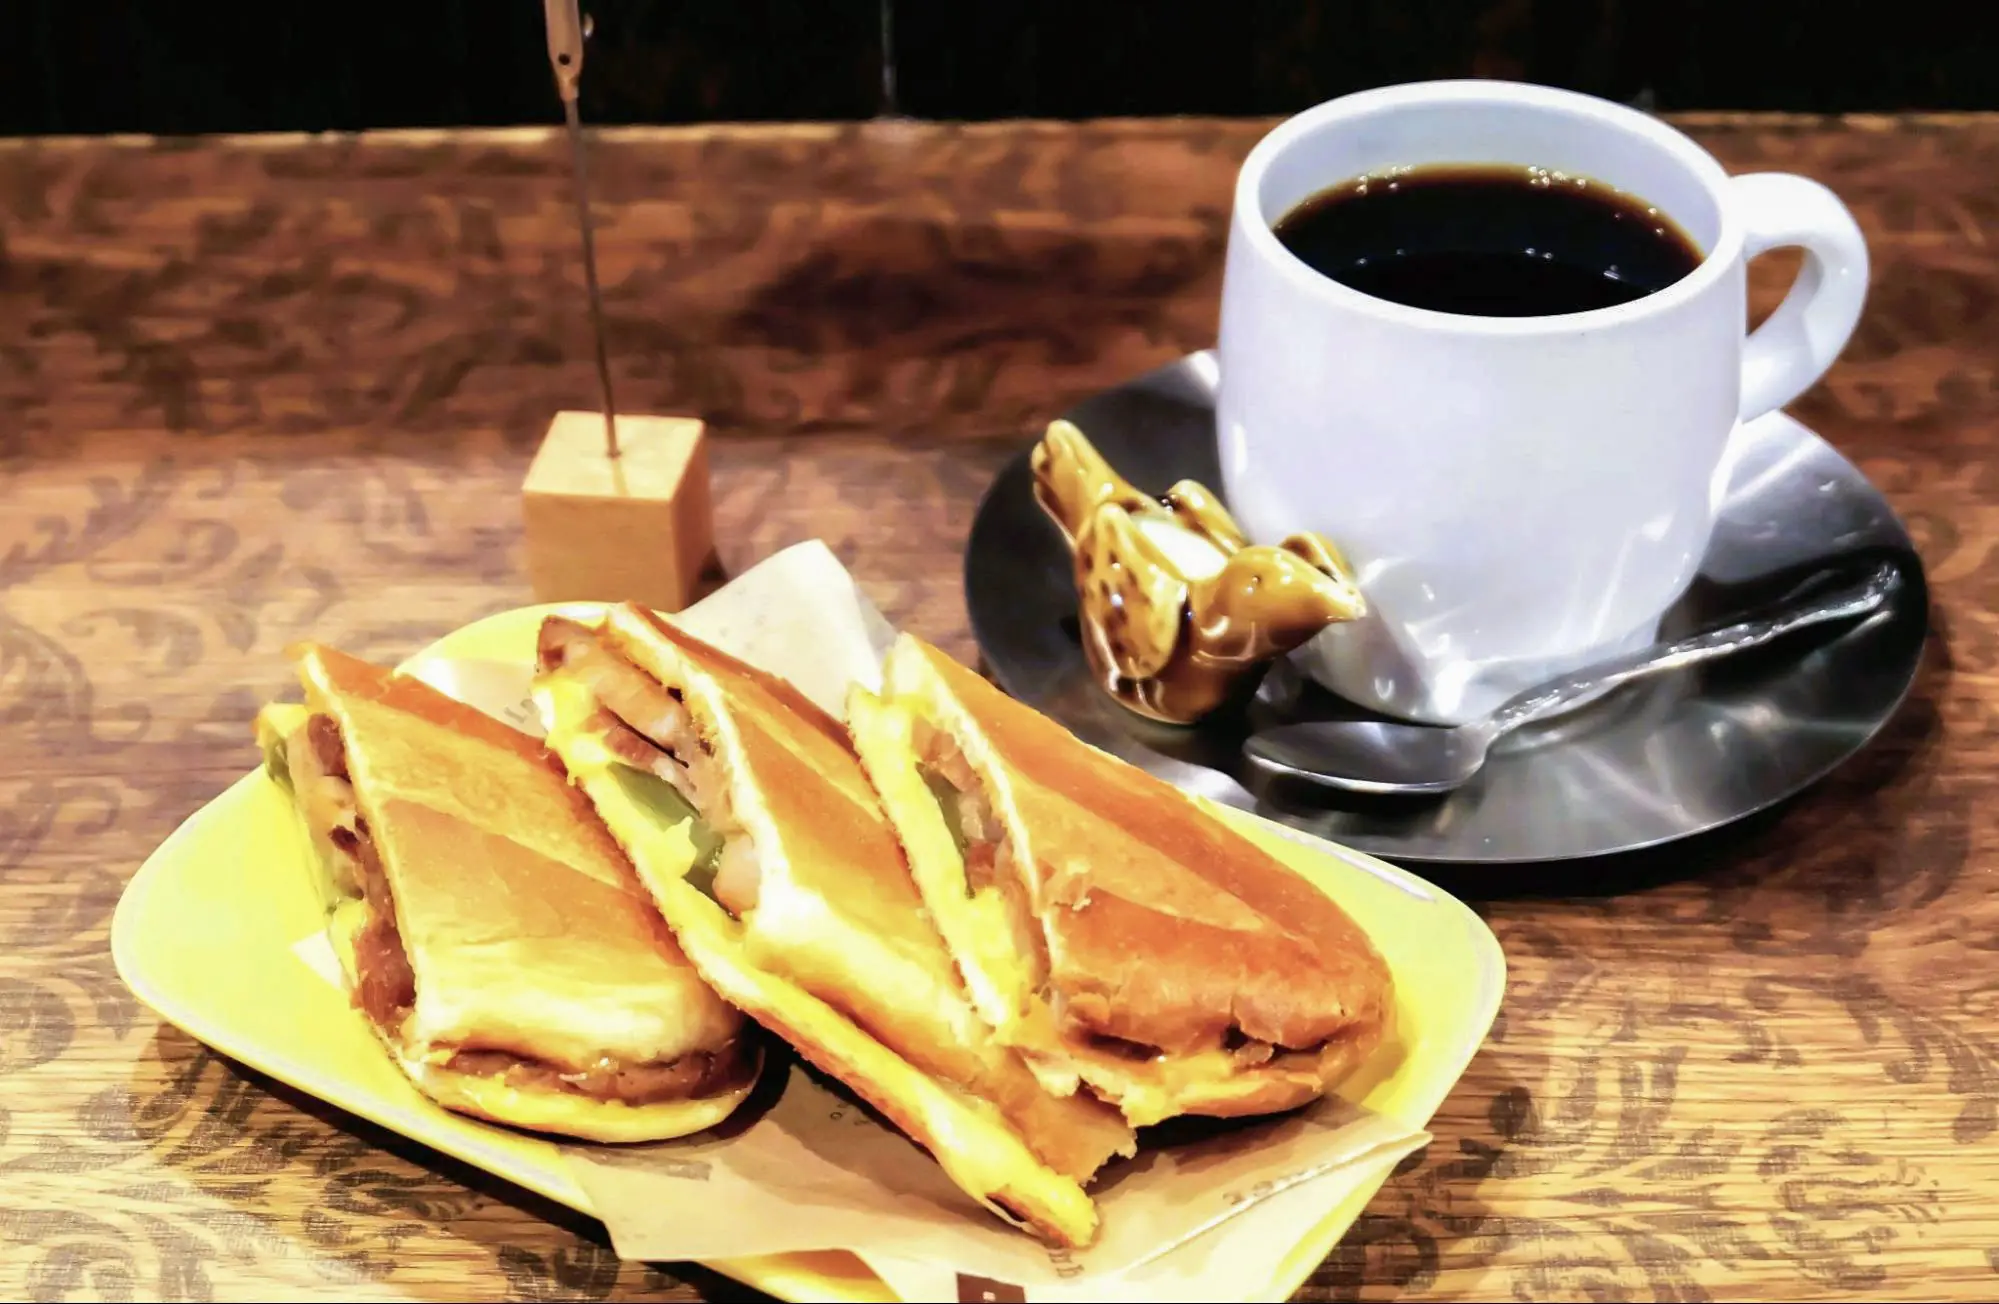 Cửa hàng nổi tiếng với bánh mì sandwich &quot;Sumoriba&quot;. Cùng thư giãn trong không gian đậm chất hoài cổ thời Showa và menu được làm mới